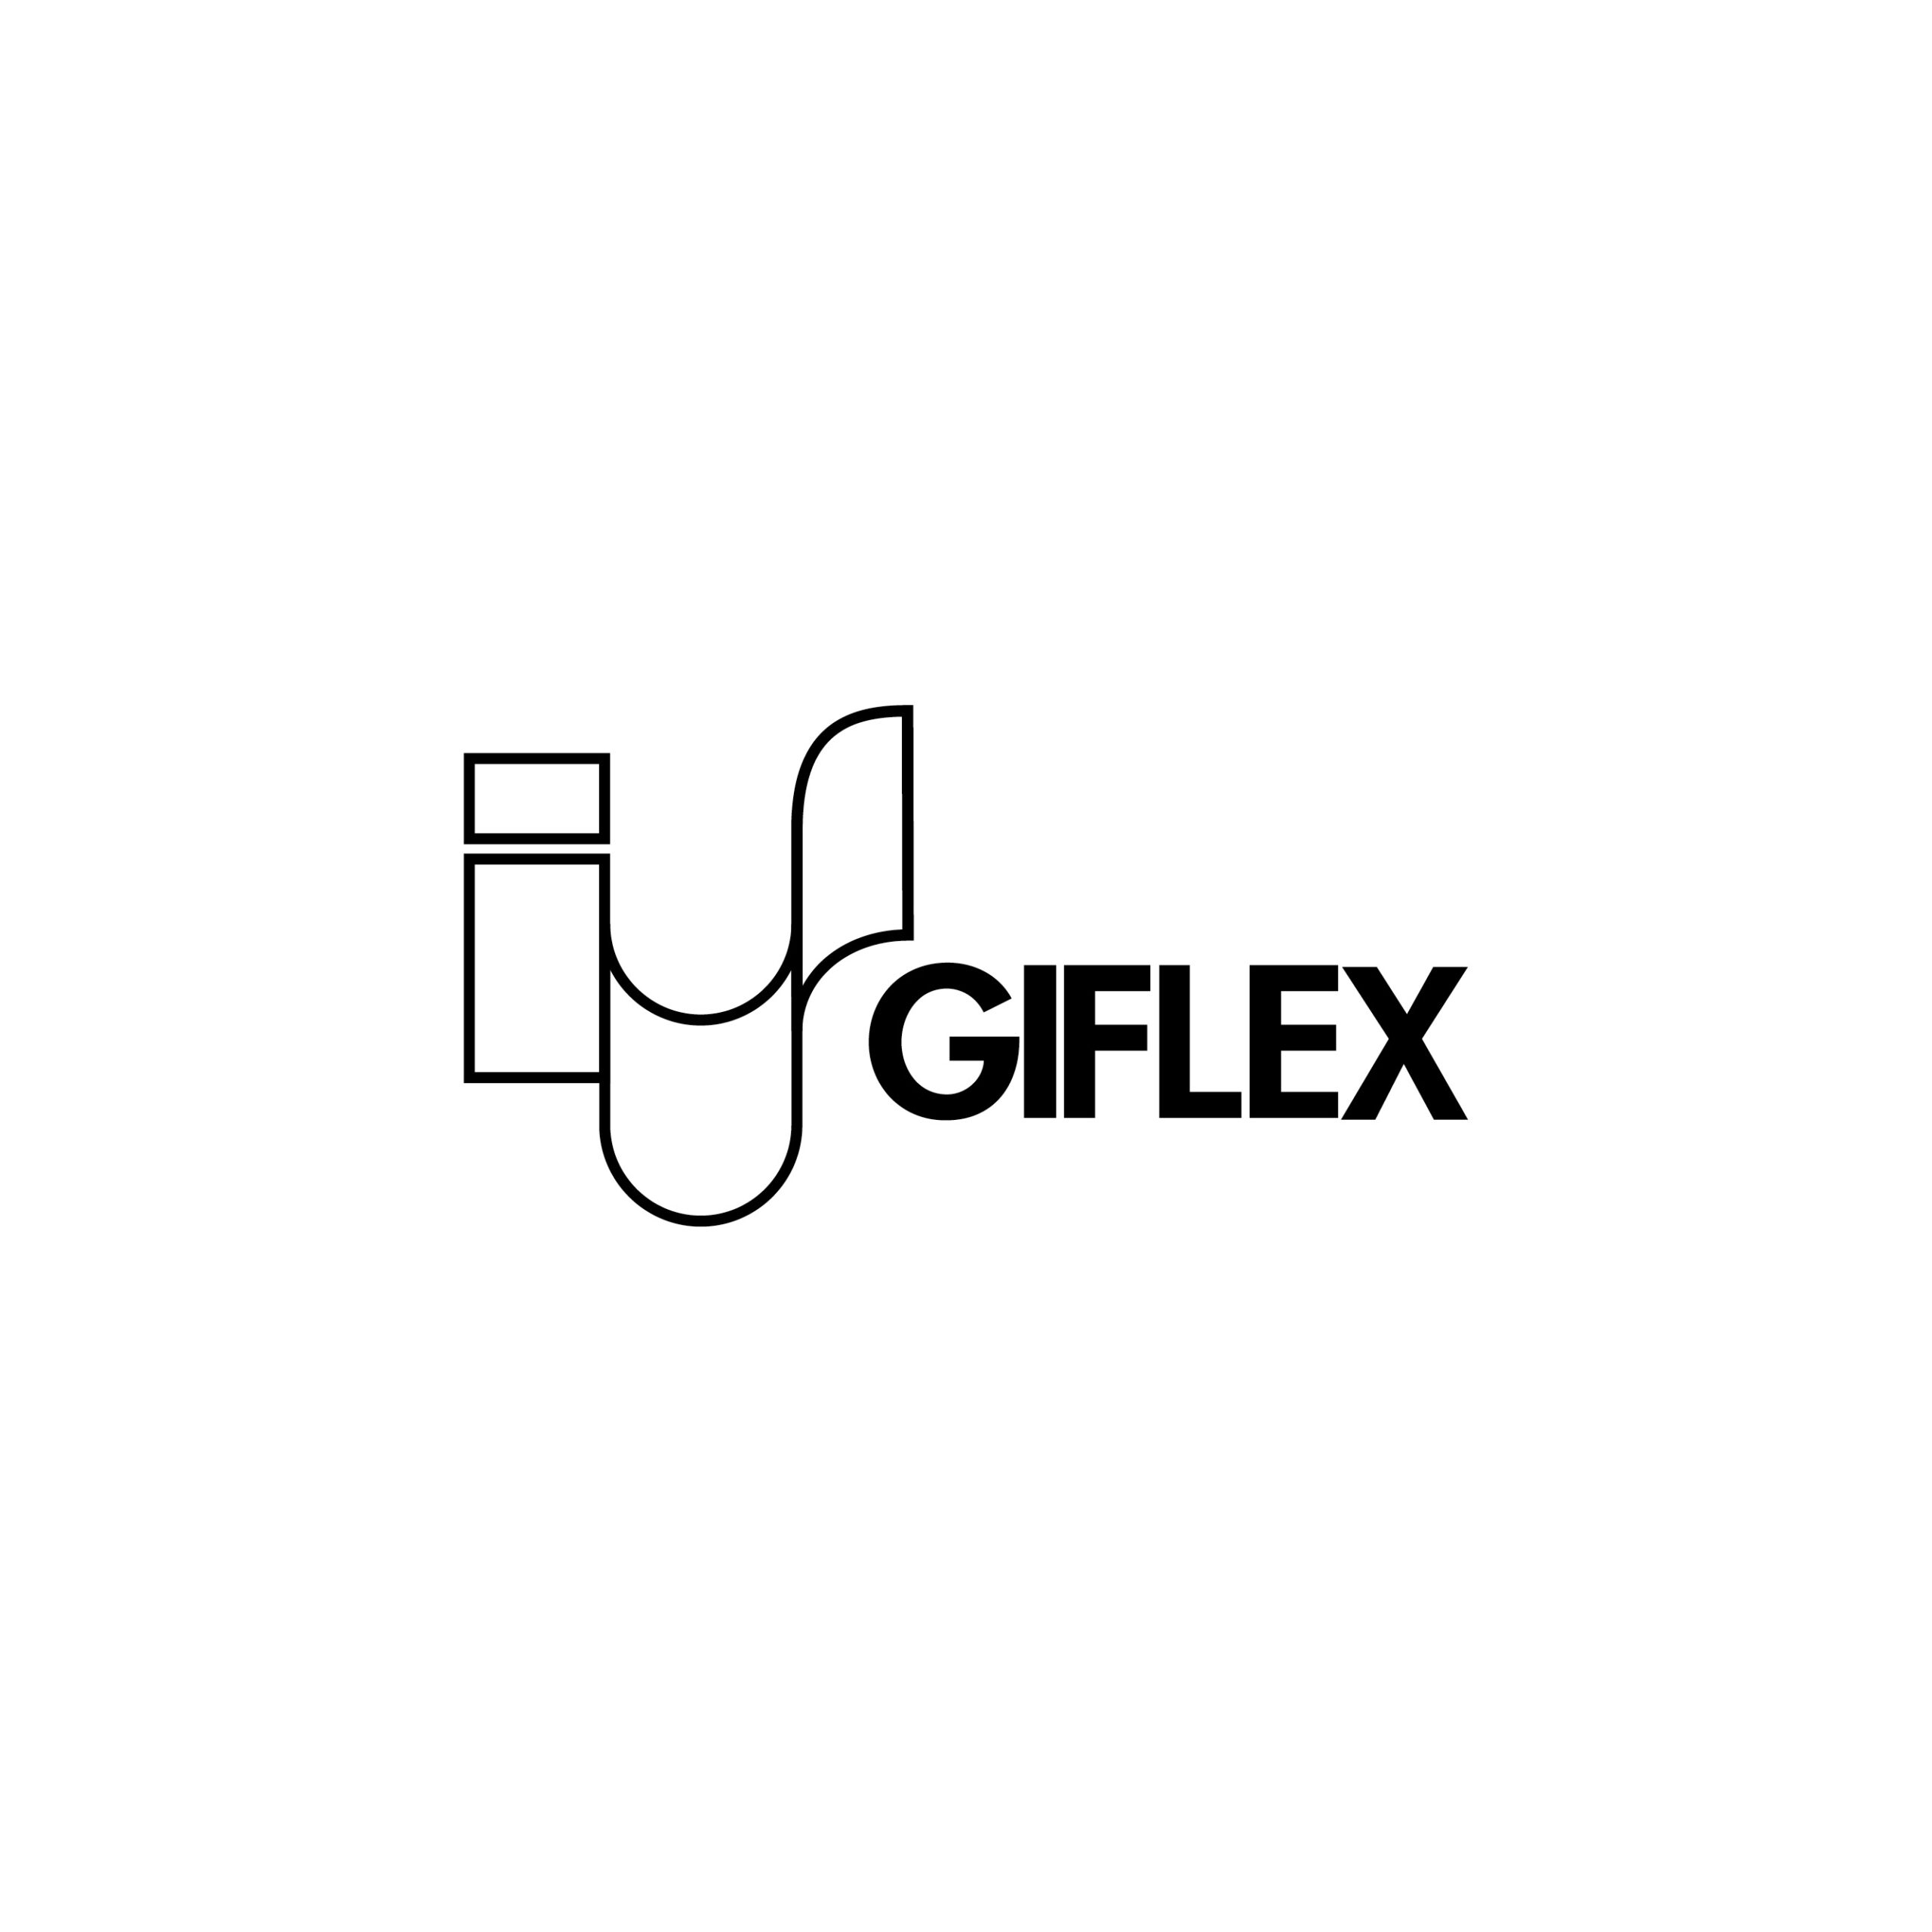 Giflex